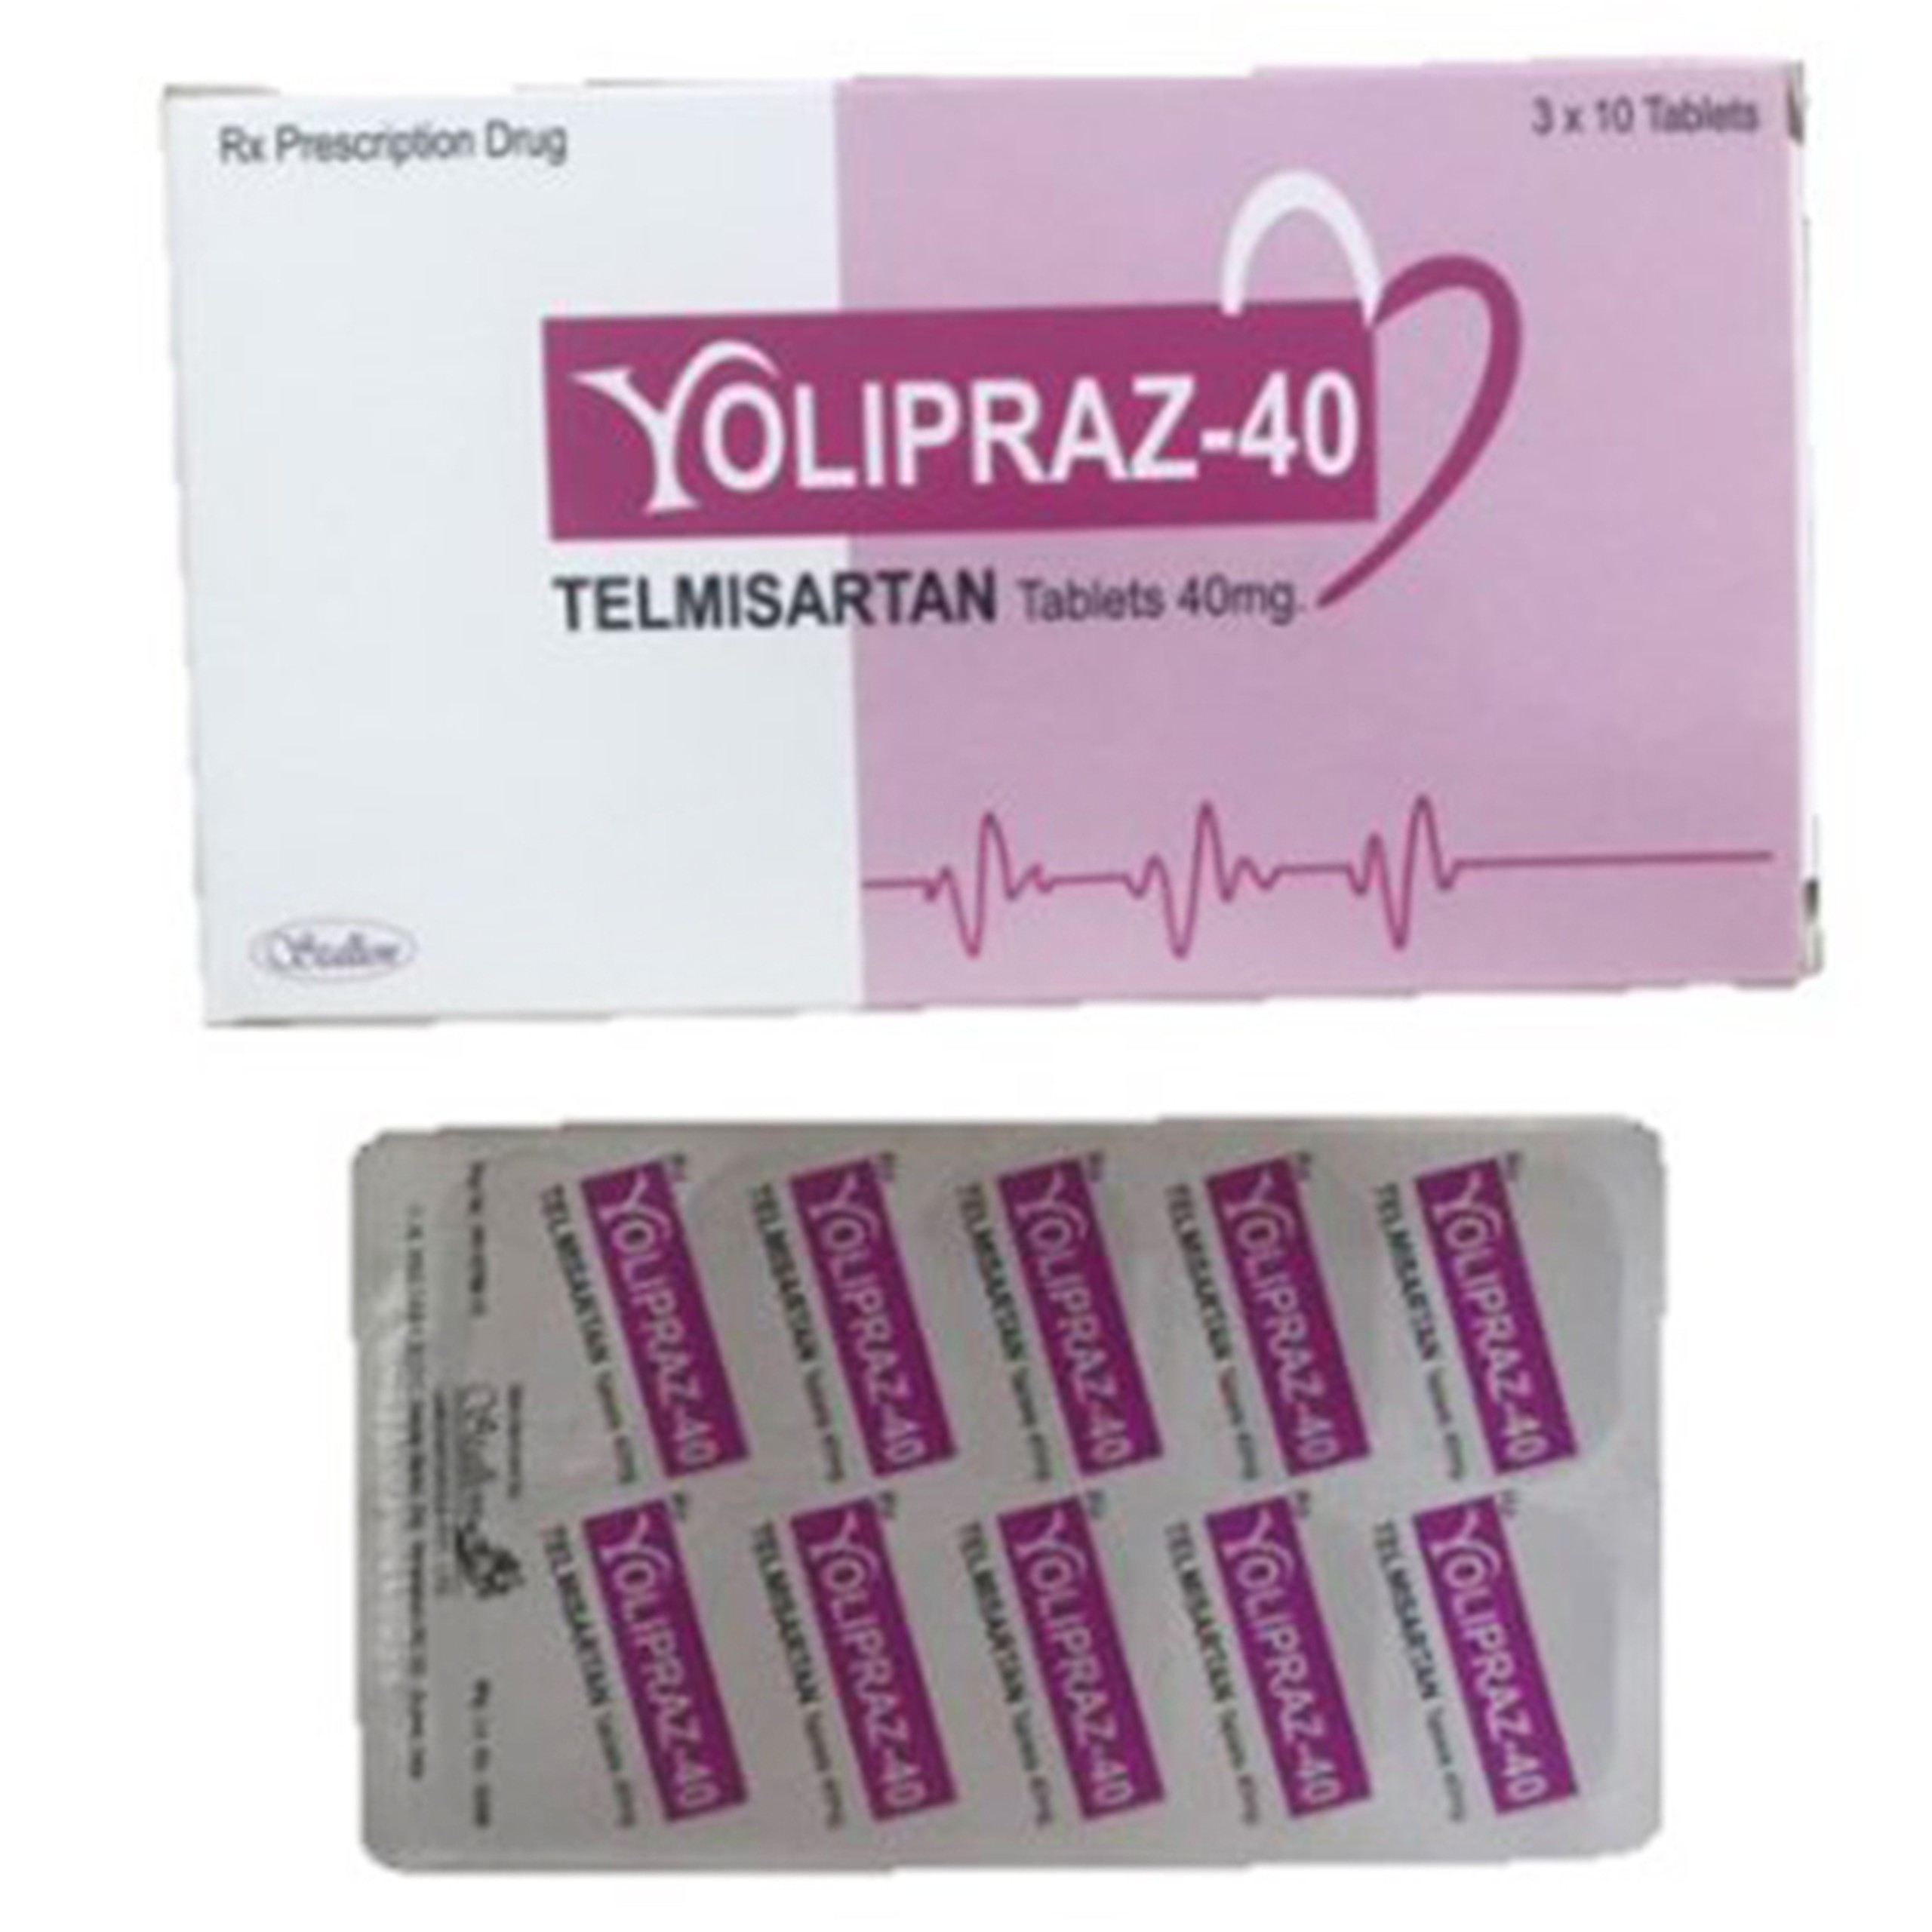 Thuốc Yolipraz-40 Stallion điều trị tăng huyết áp, phòng ngừa bệnh tim mạch (3 vỉ x 10 viên)